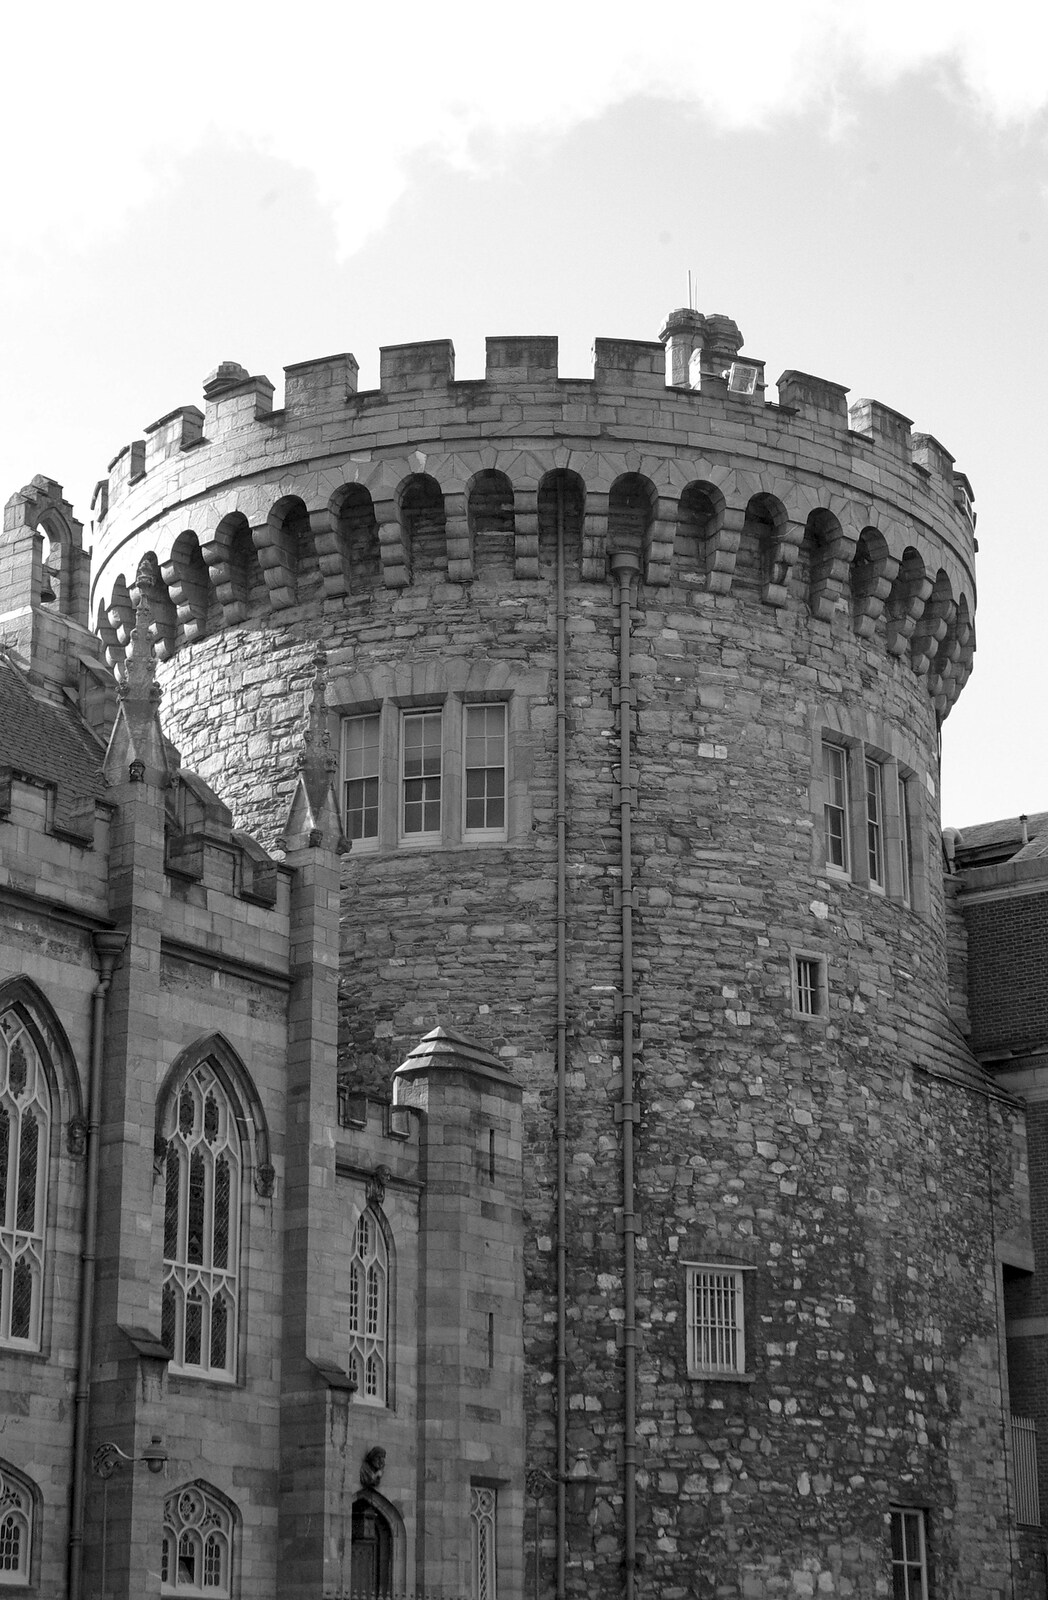 Blackrock and Dublin, Ireland - 24th September 2007: Dublin Castle's keep